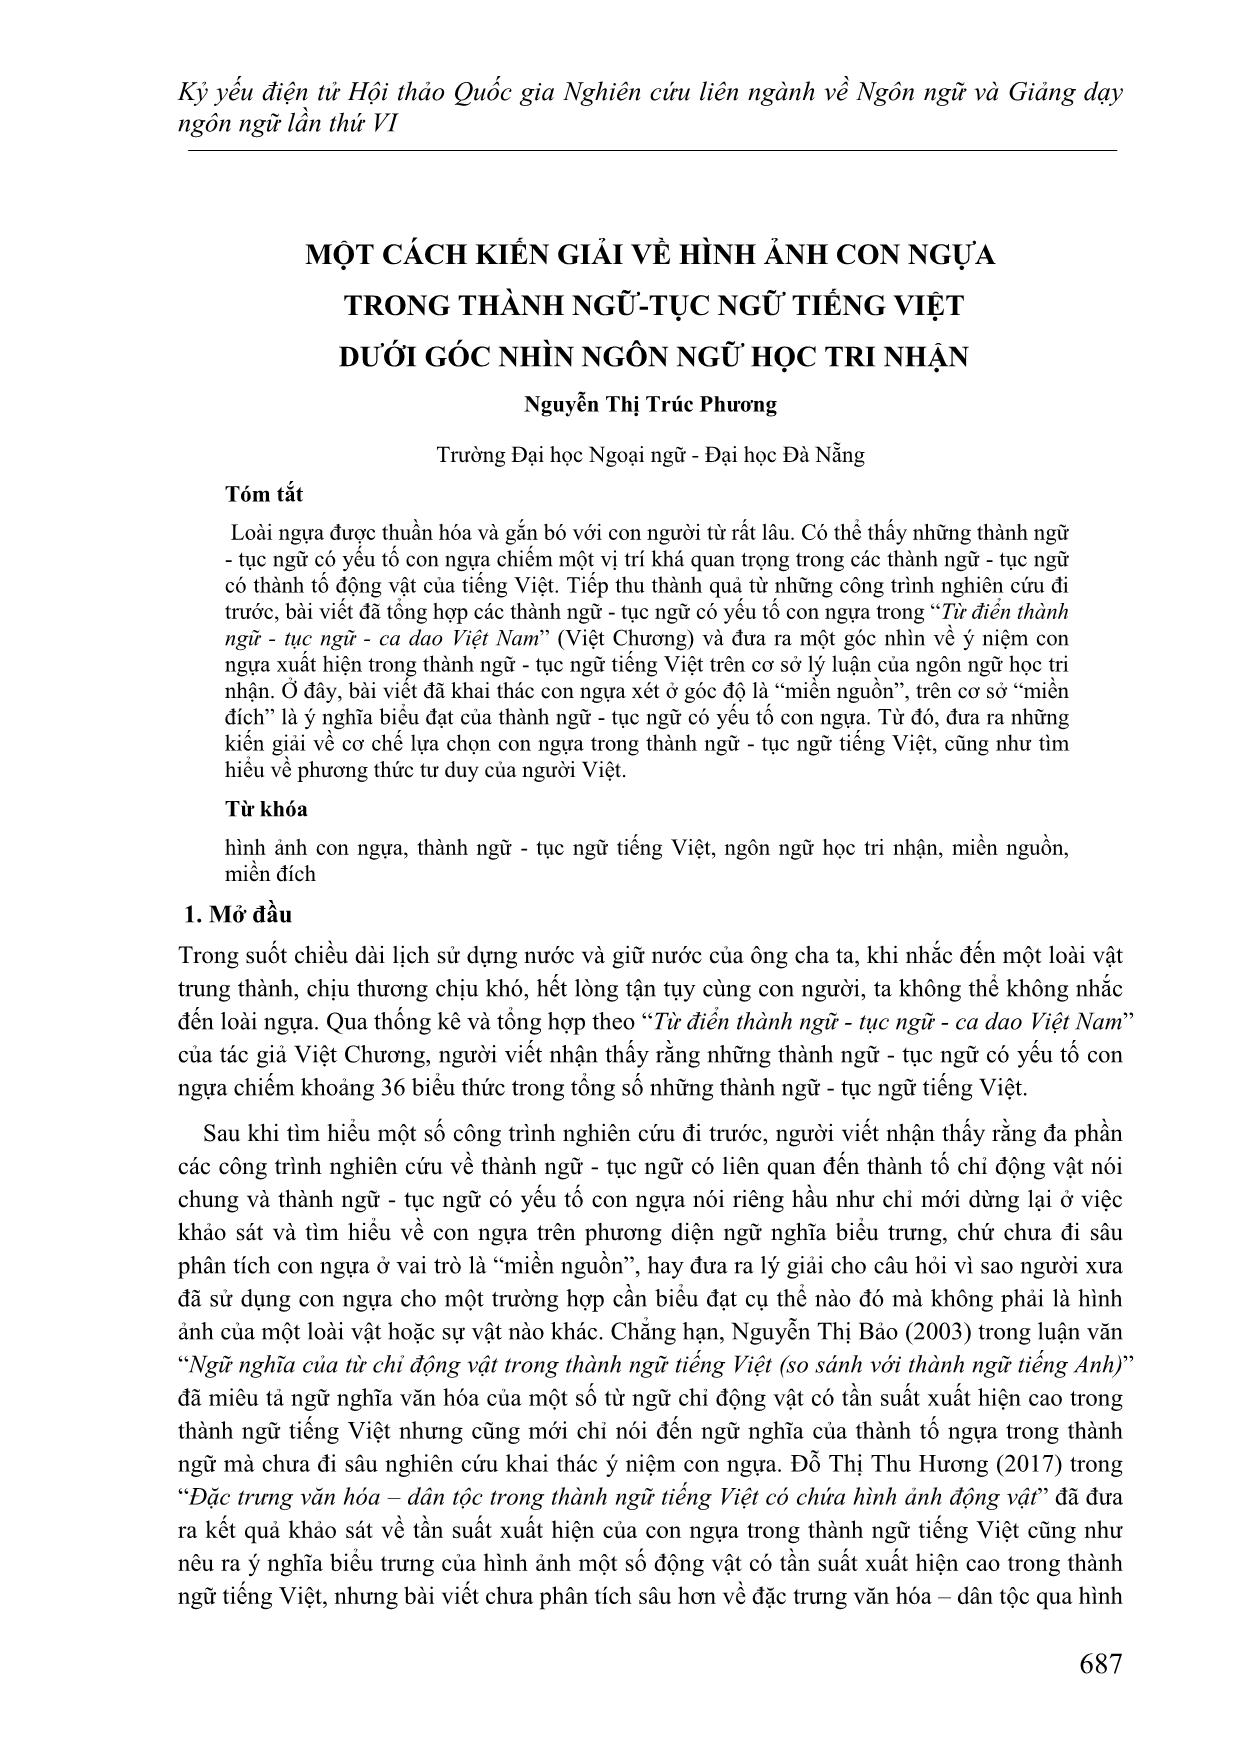 Một cách kiến giải về hình ảnh con ngựa trong thành ngữ-Tục ngữ Tiếng Việt dưới góc nhìn ngôn ngữ học tri nhận trang 1